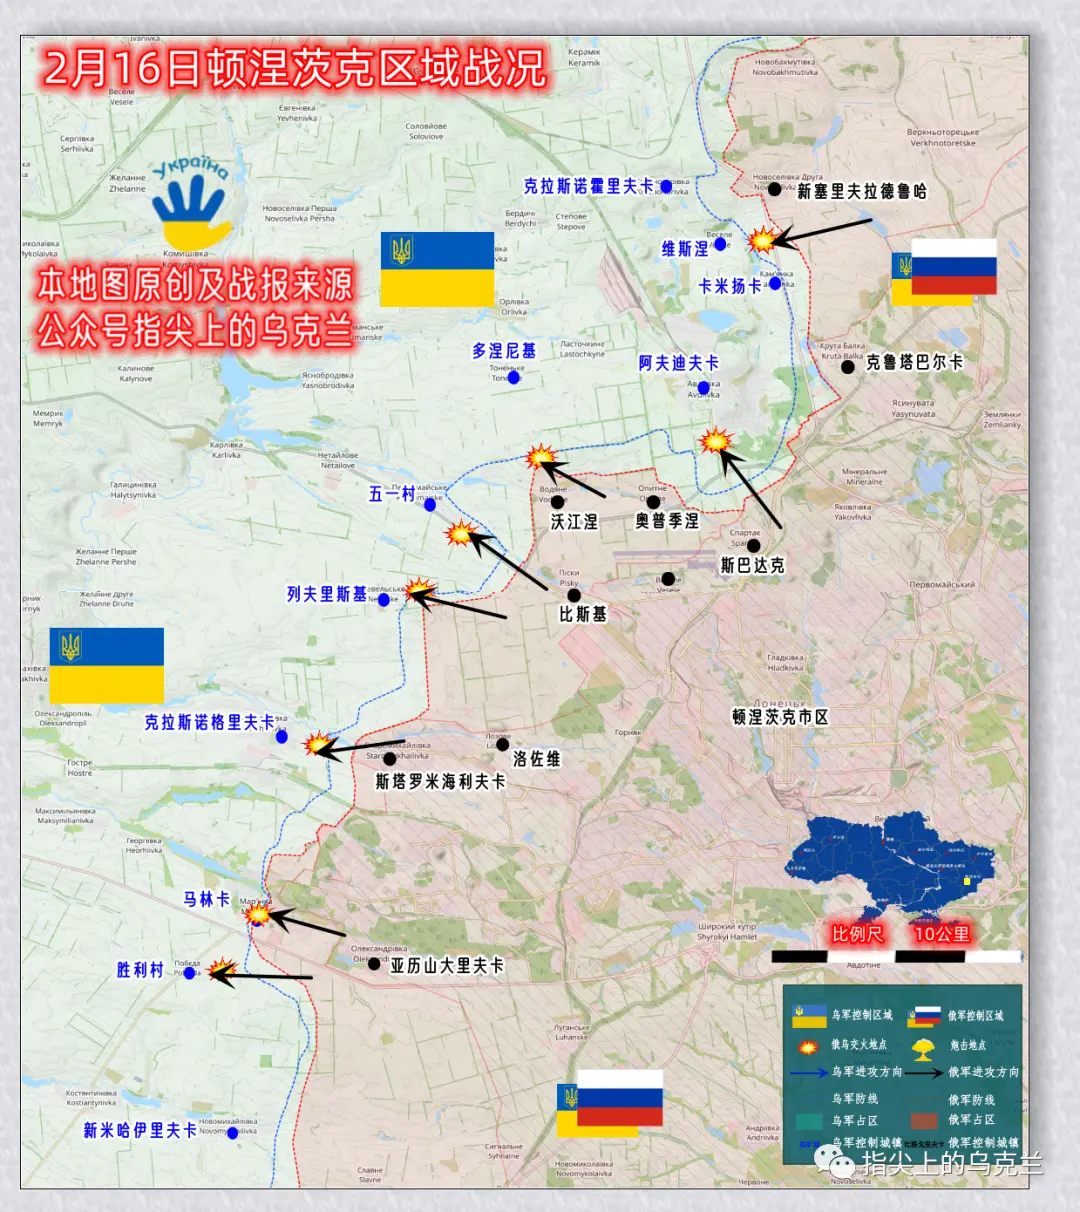 战争第358天，俄军凌晨向乌克兰发射36枚巡航导弹，欧盟对俄实施马桶禁运